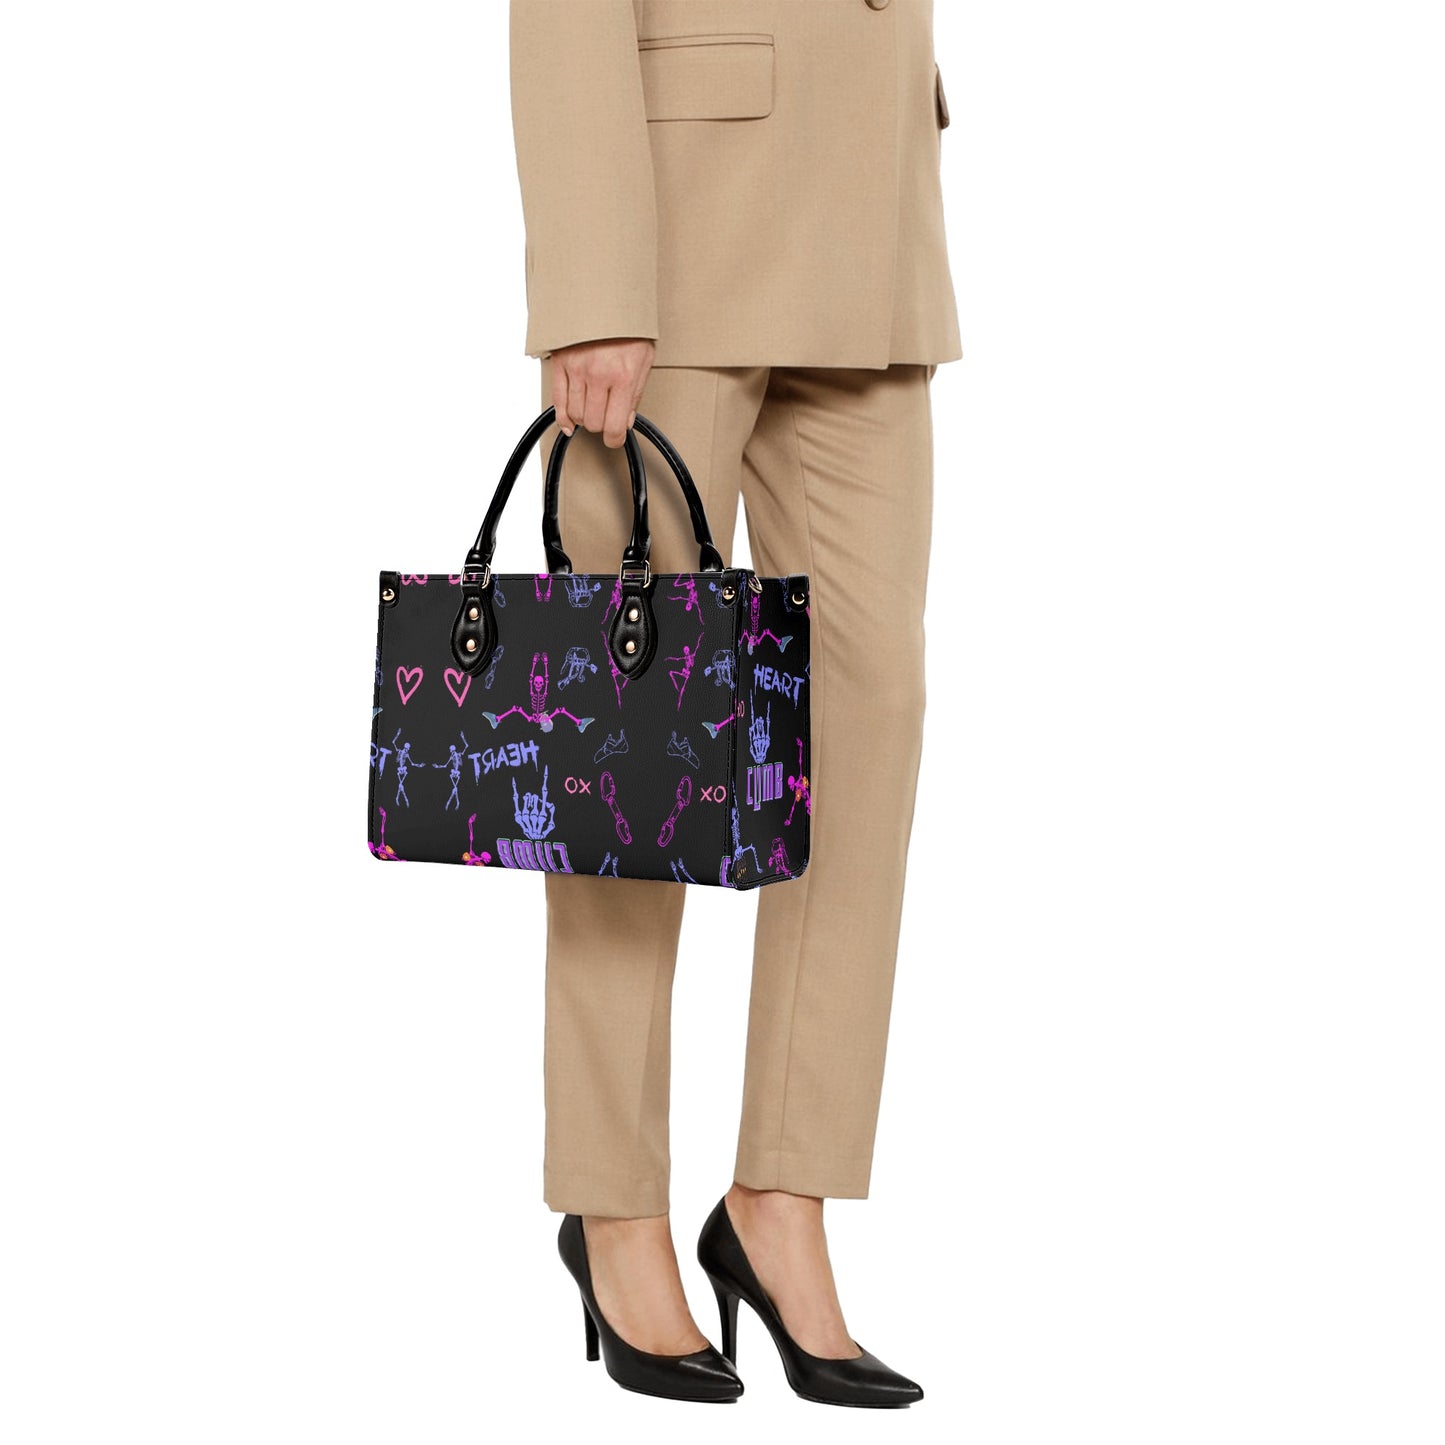 Luxury Women Leather Handbag